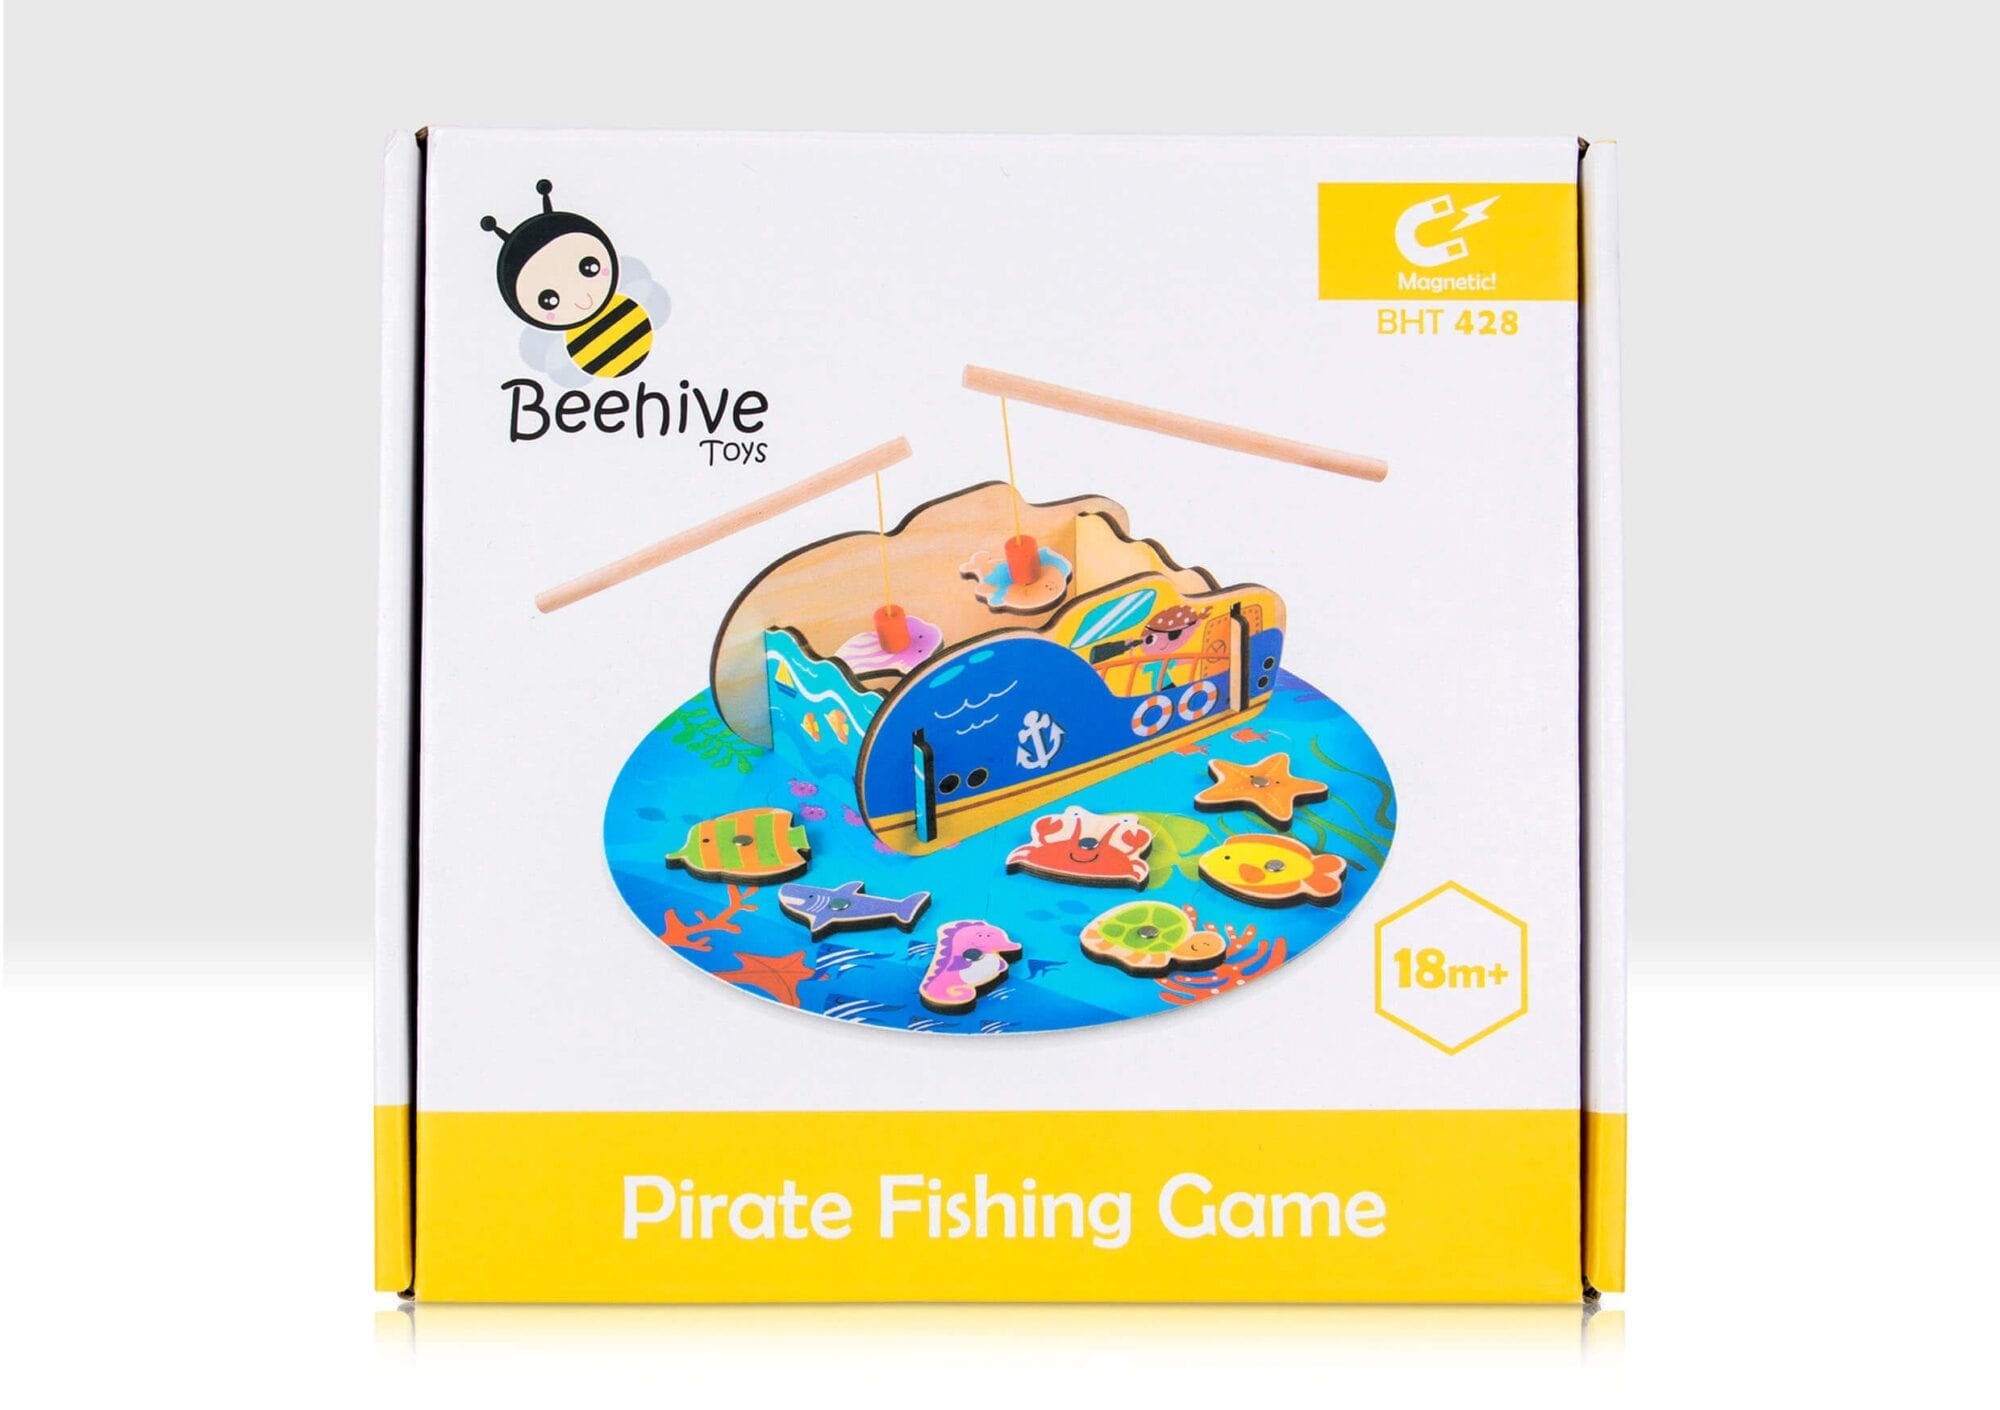 Pirate fishing game